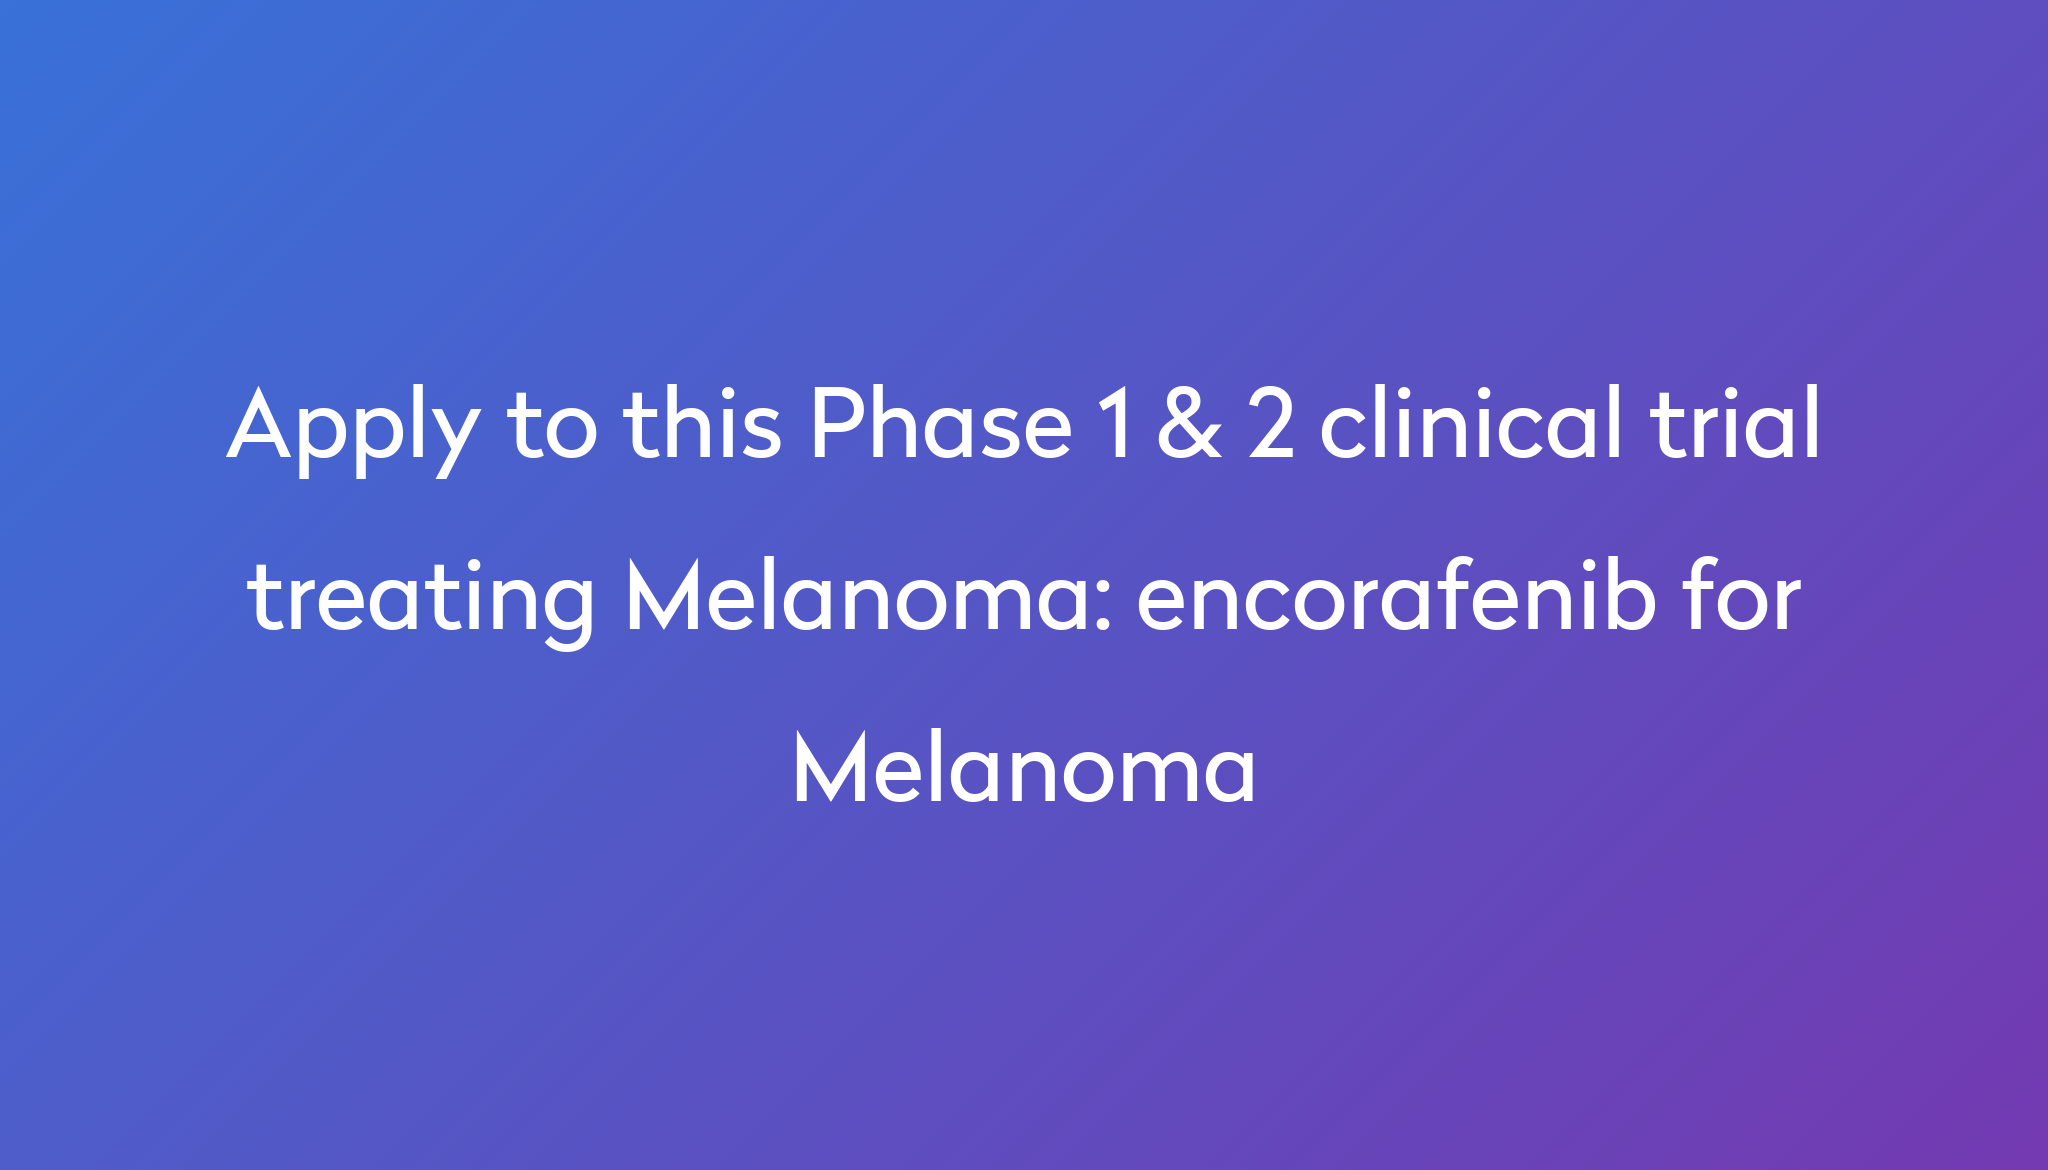 encorafenib for Melanoma Clinical Trial 2024 Power